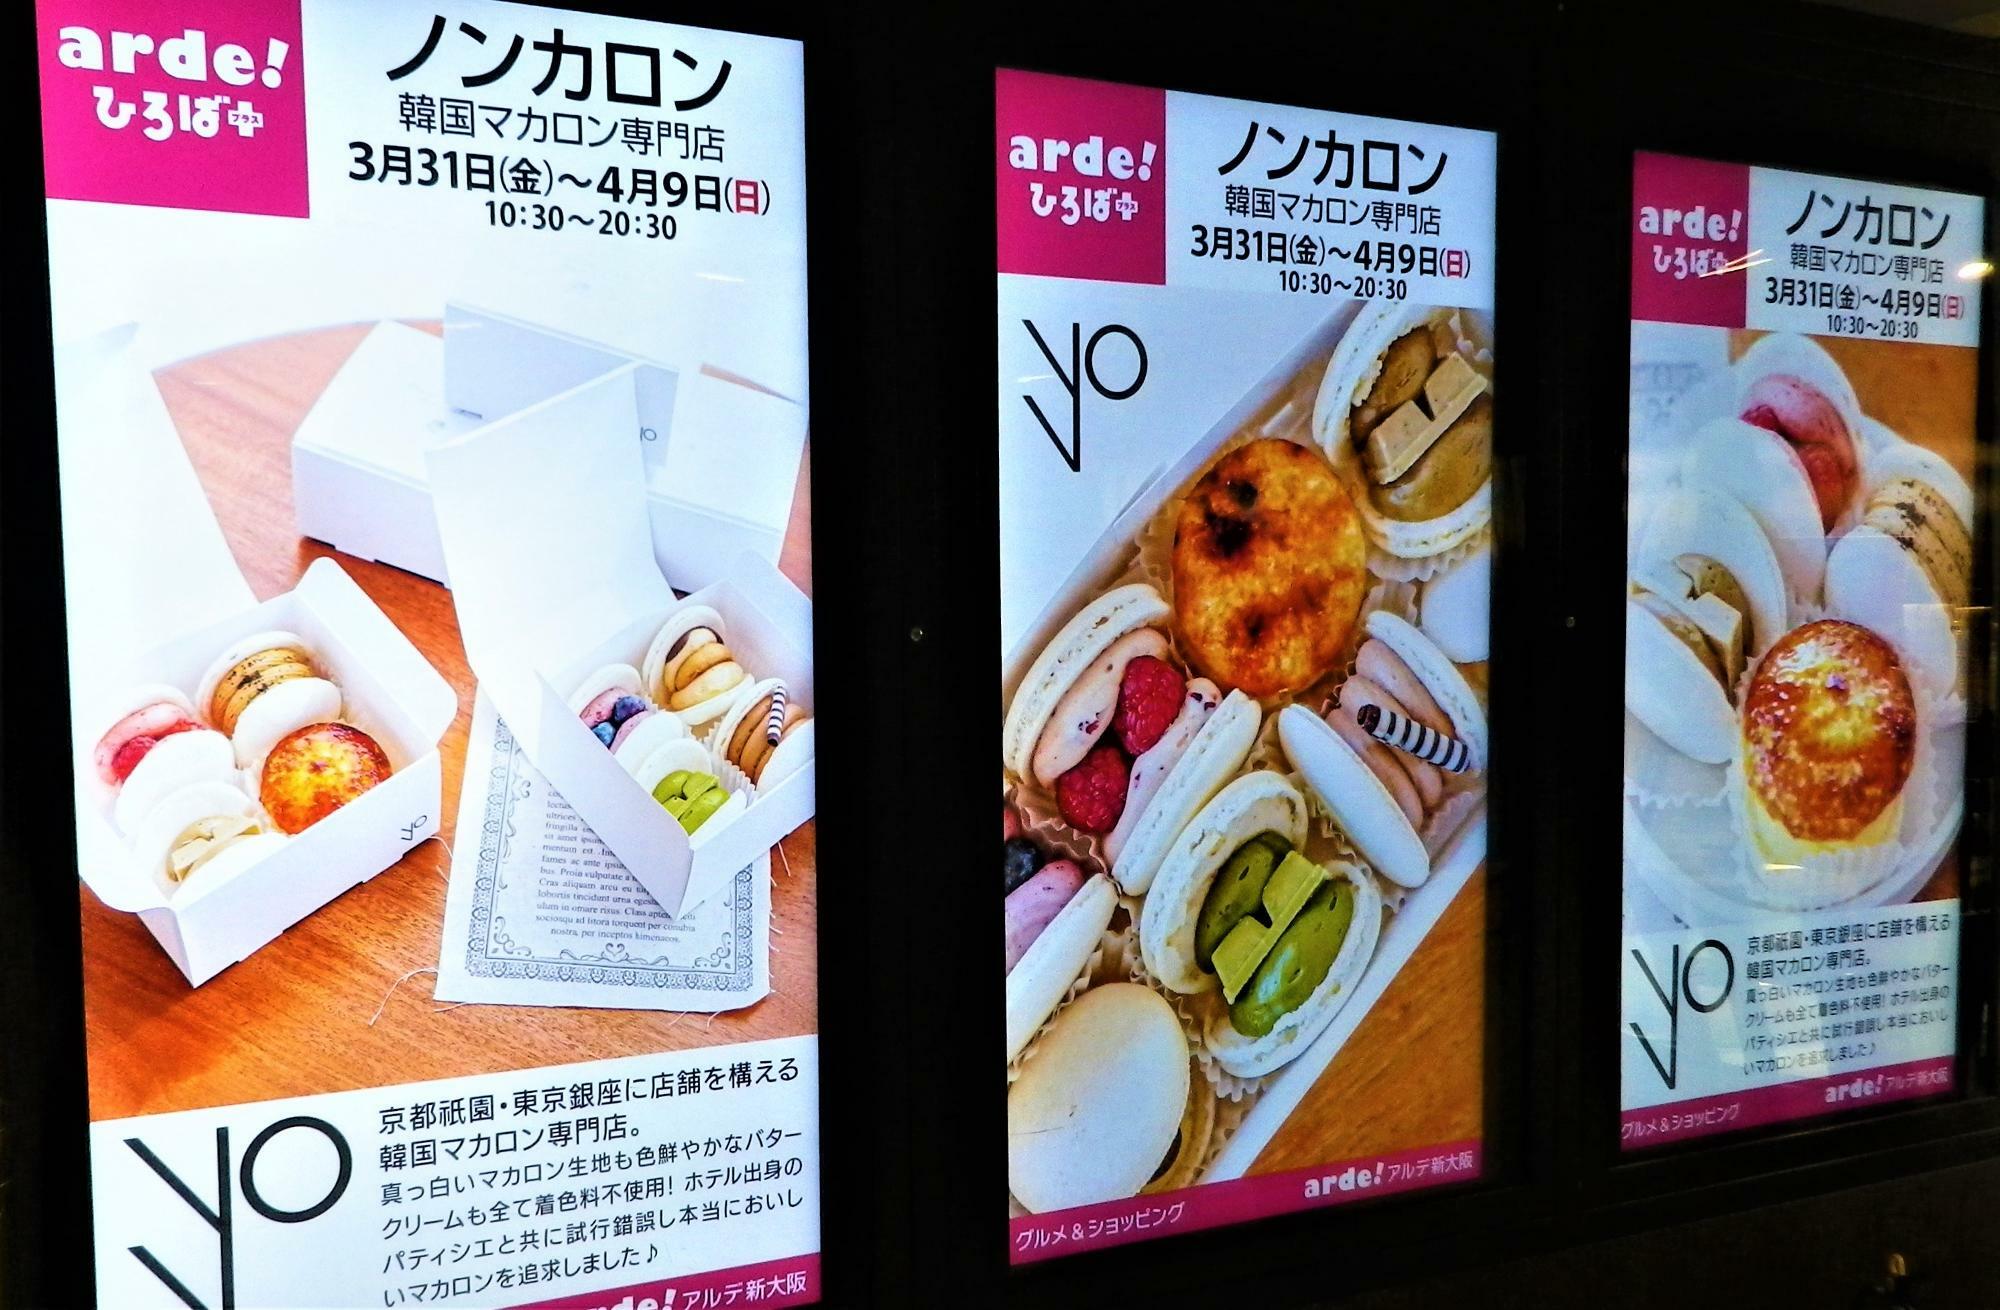 新大阪駅のあちこちに掲示されている「ノンカロン」のデジタルボード。